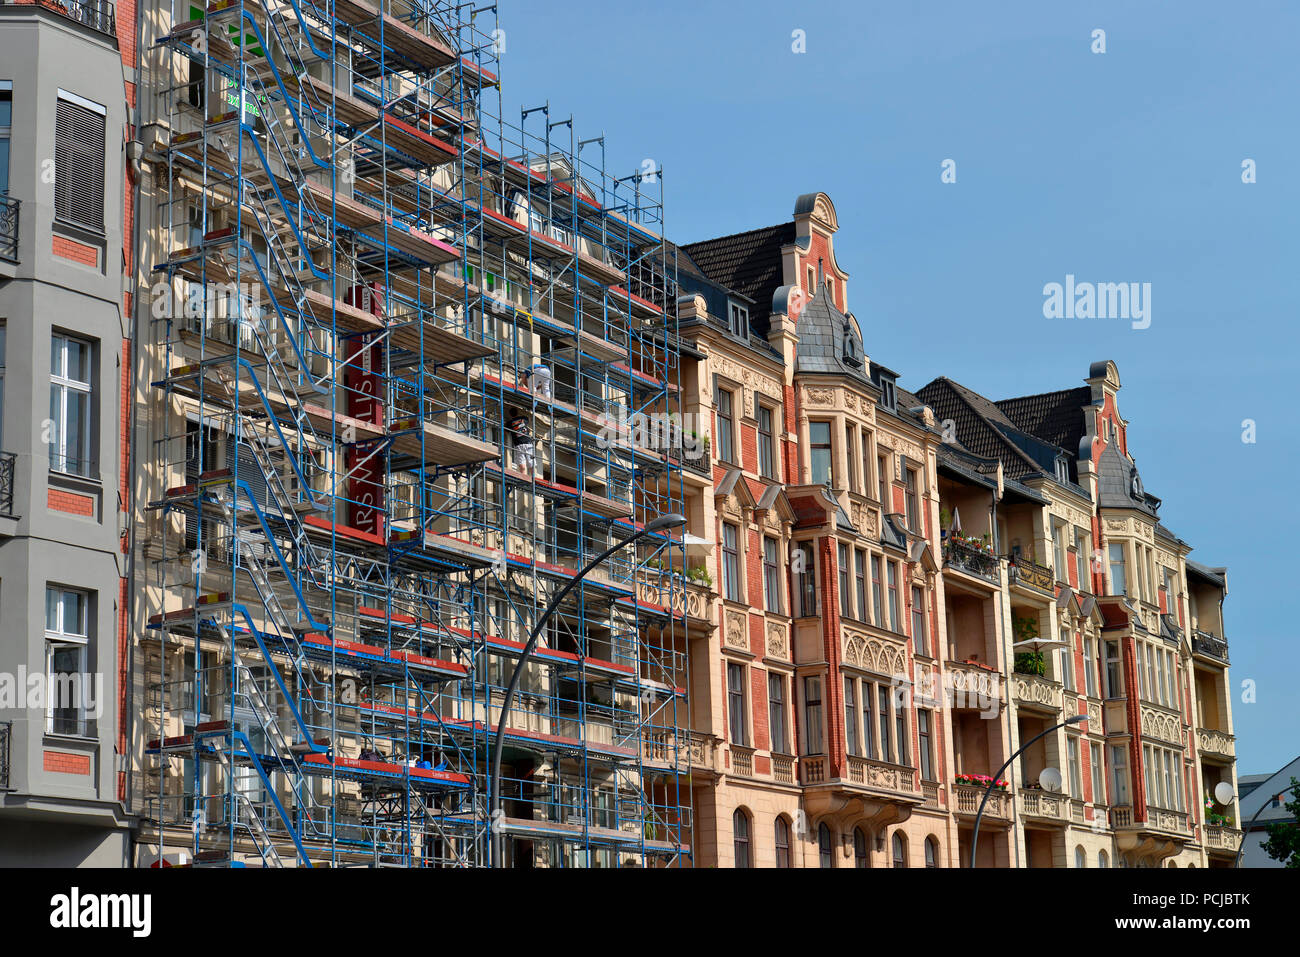 Renovierung, Altbau, Hauptstrasse, Schoeneberg, Berlino, Deutschland Foto Stock